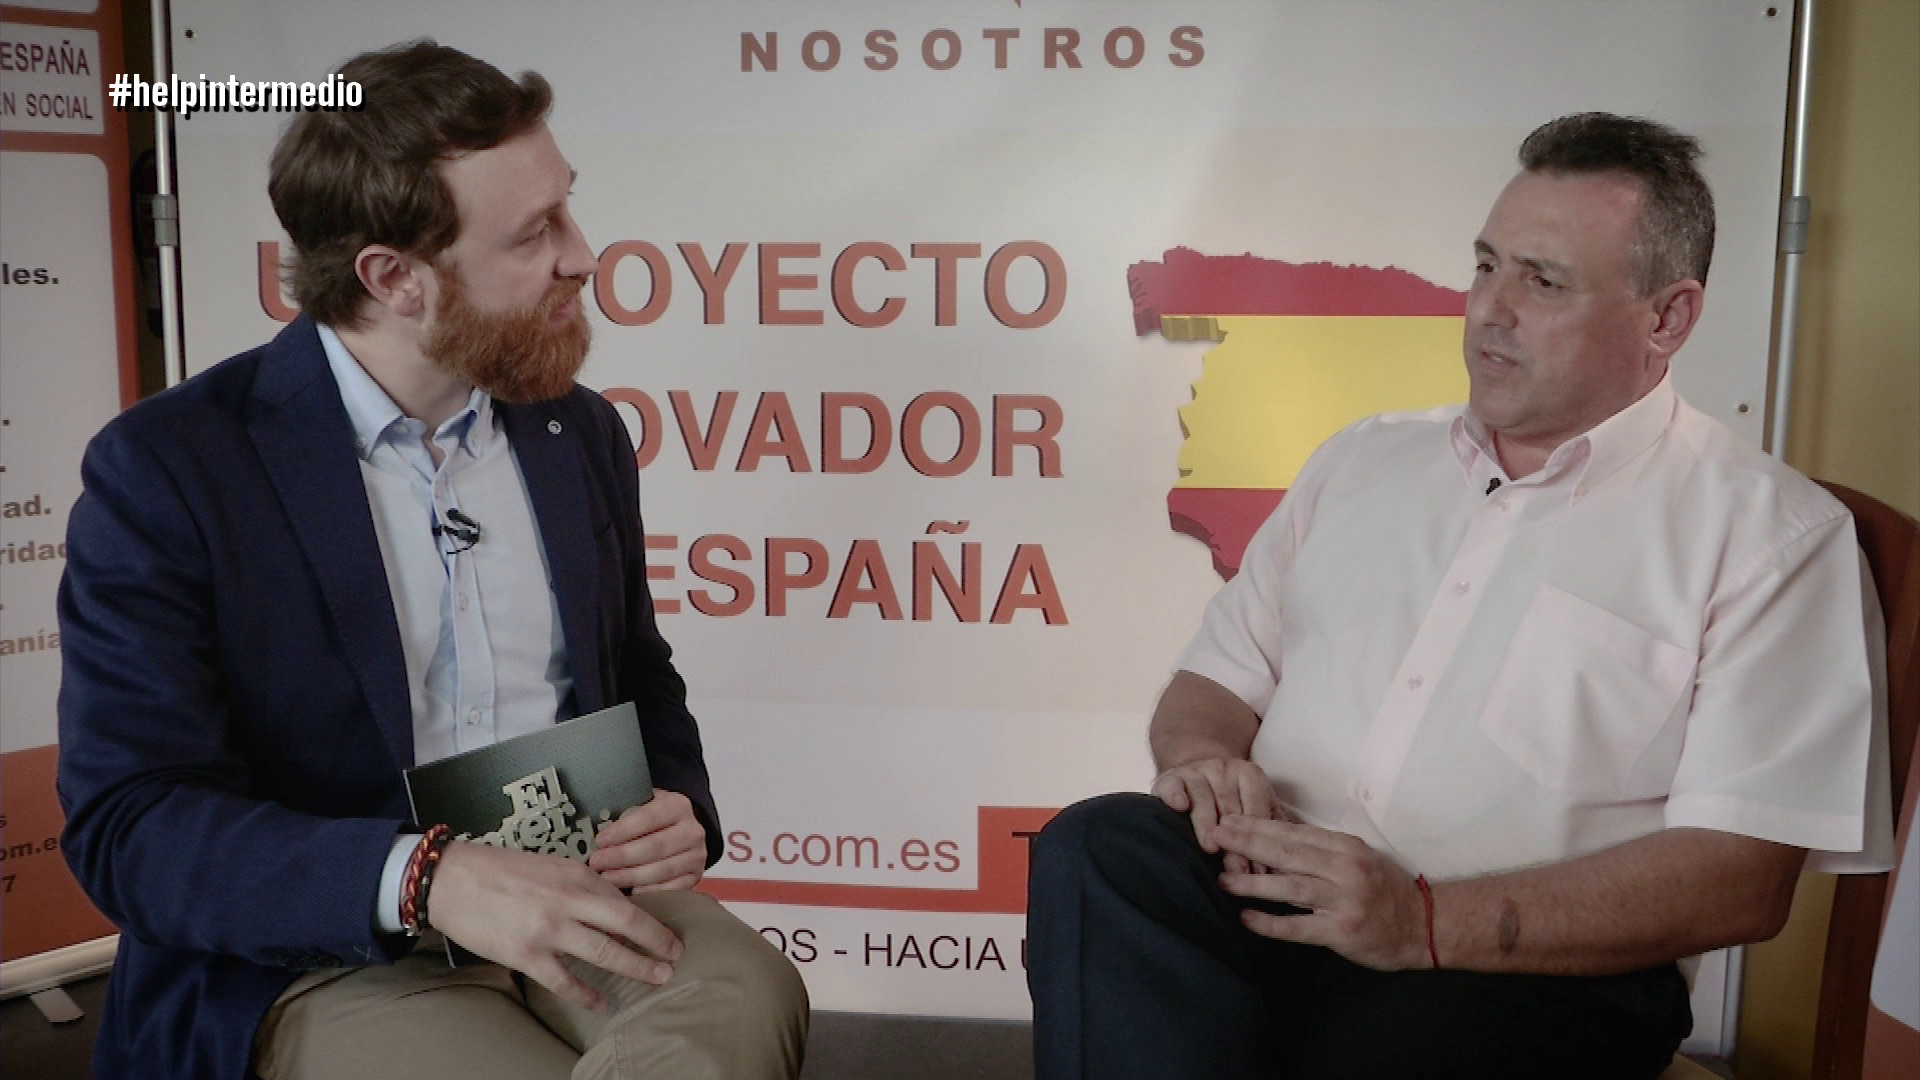 Temporada 1 (27-12-17) Manuel Burque entrevista al líder de 'Nosotros', Óscar Bermán